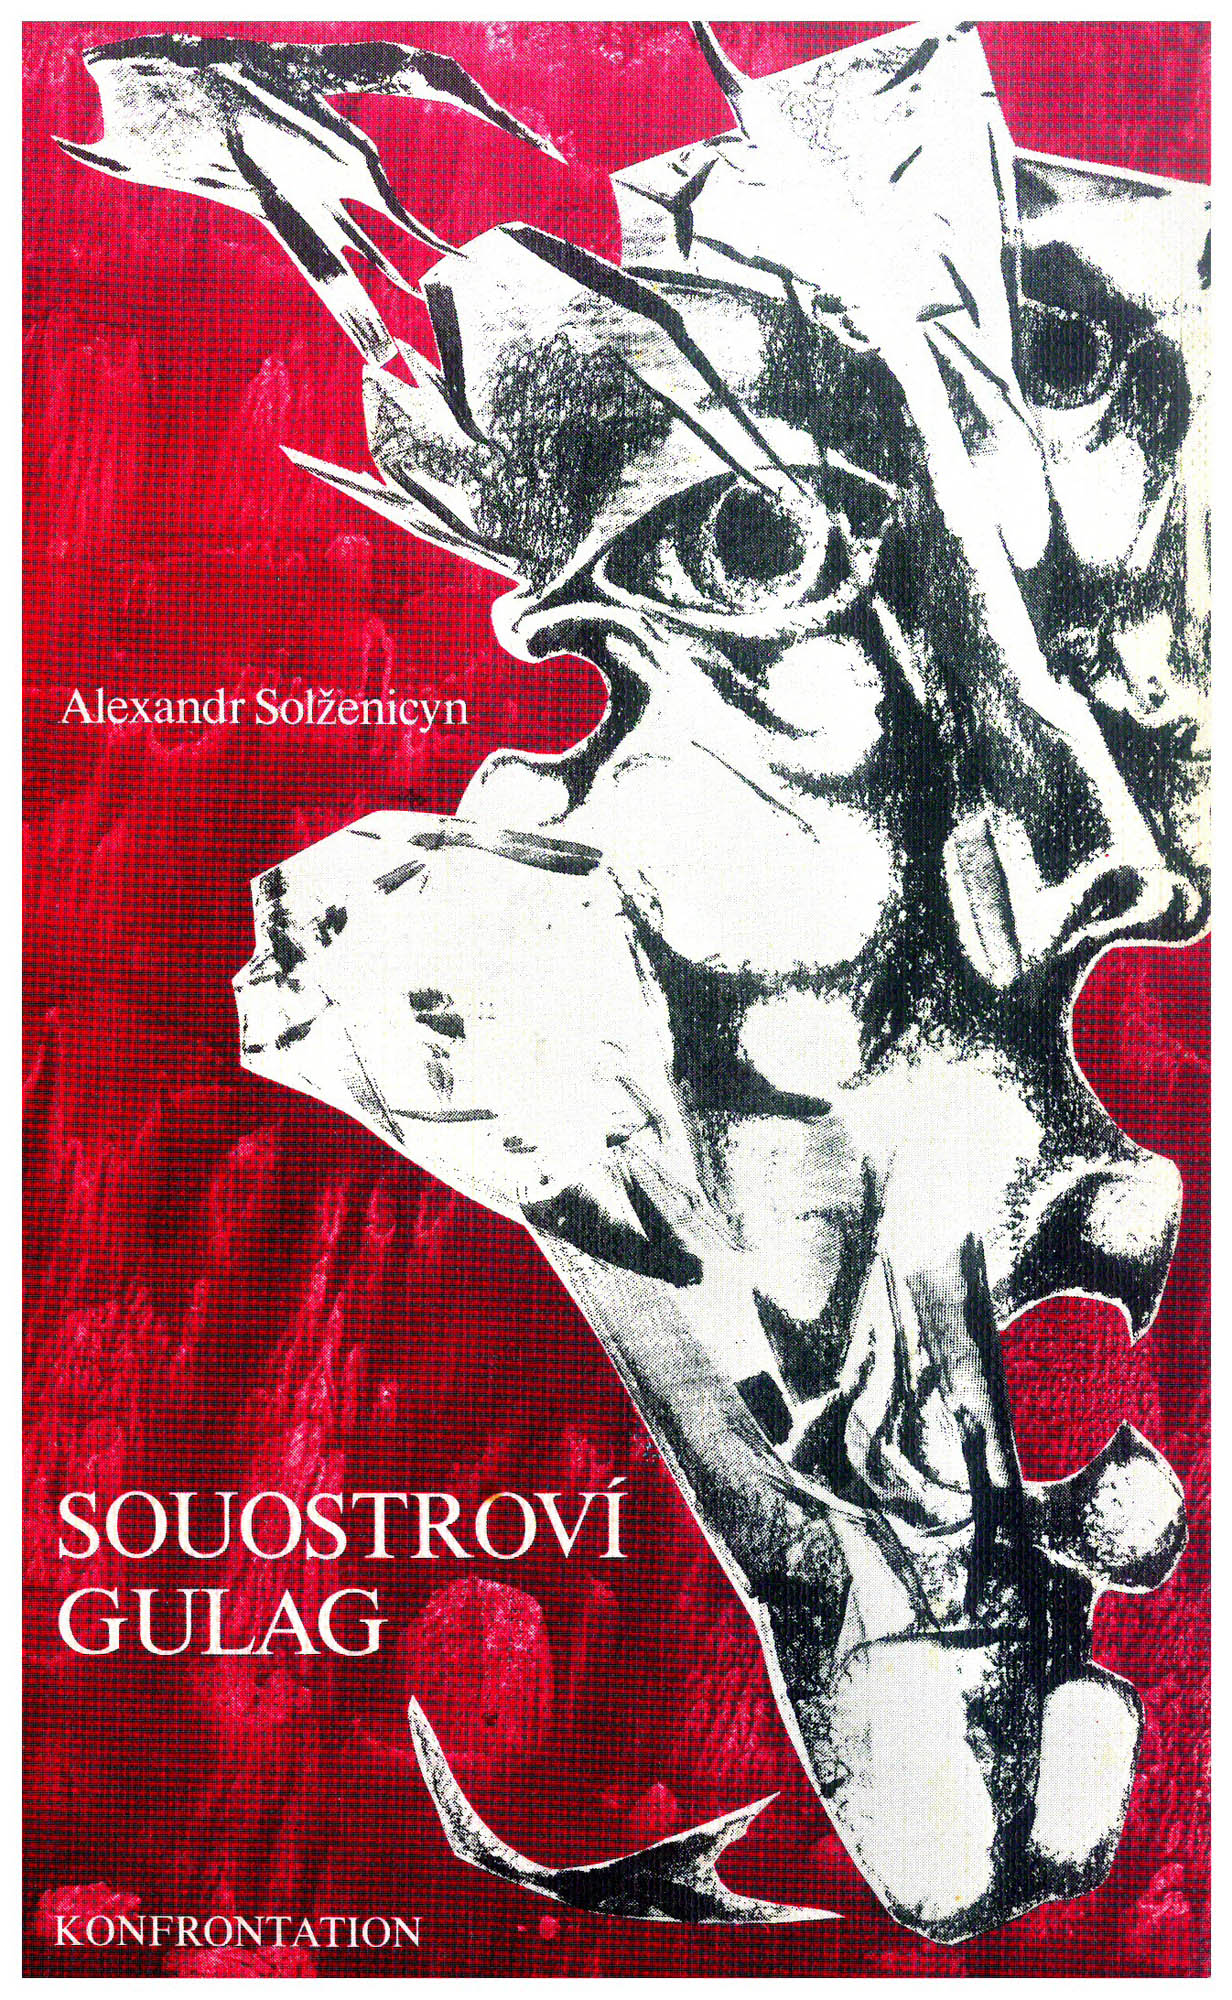 Obálka druhého dílu českého vydání Souostroví Gulag z exilového nakladatelství Konfrontace. Repro: Libri prohibiti